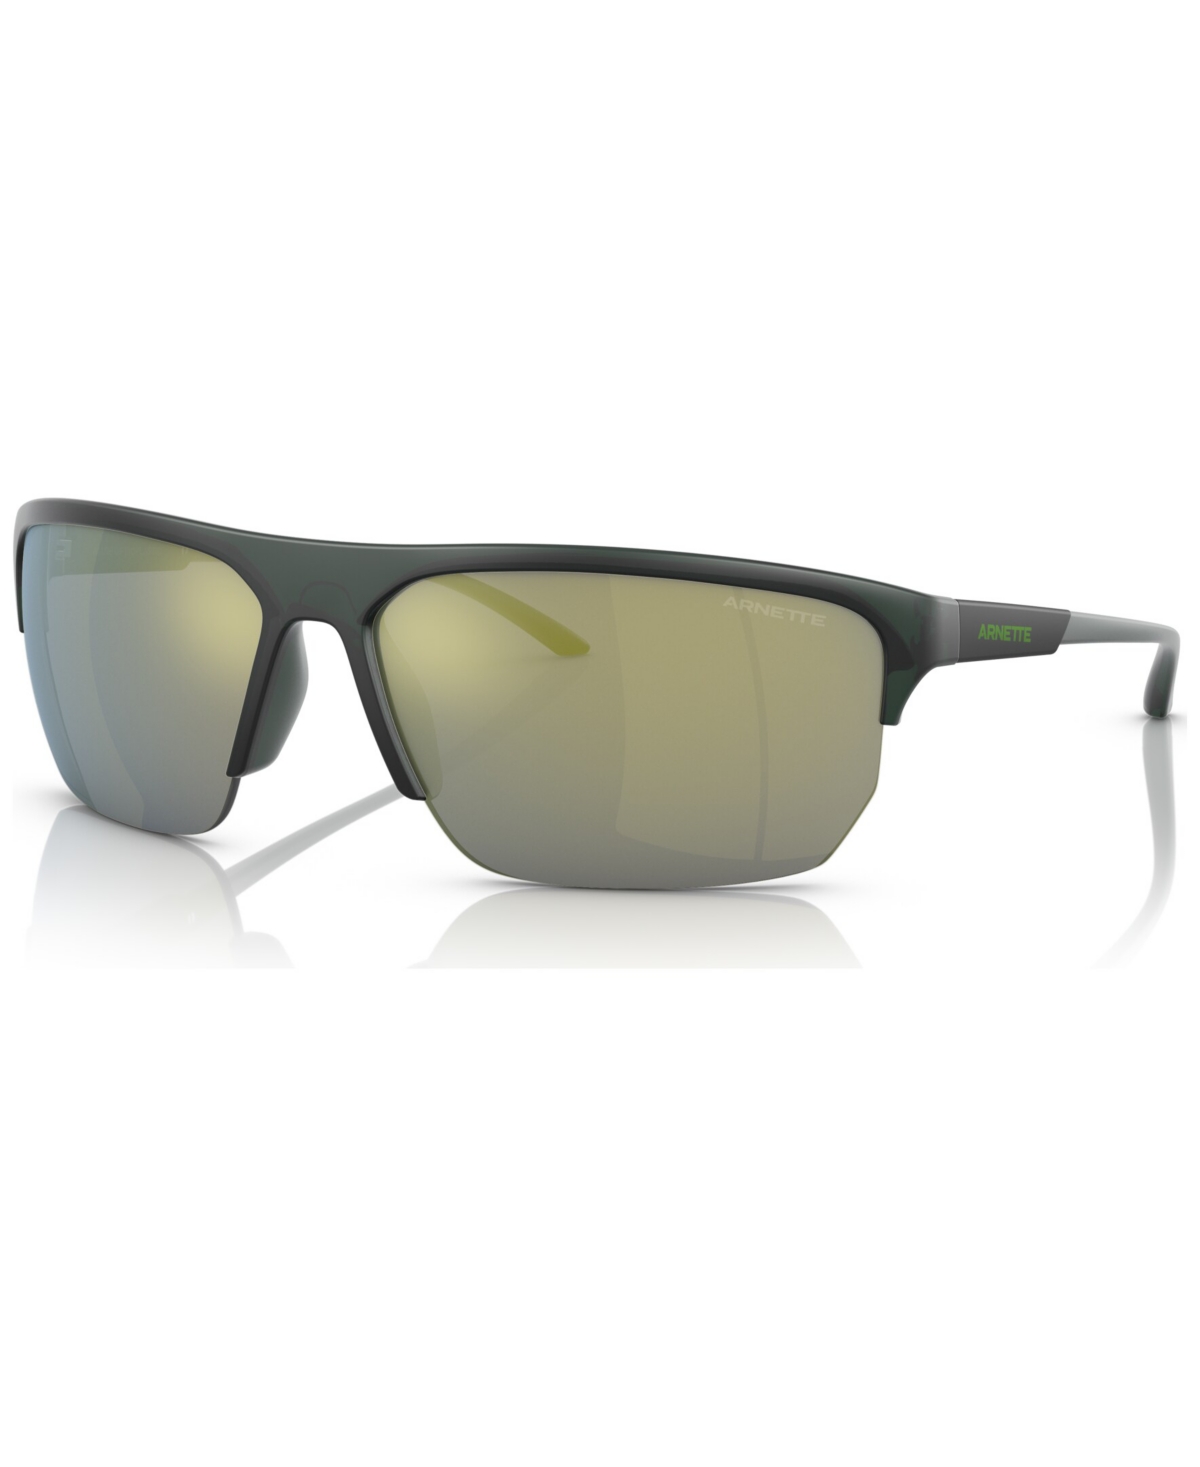 Unisex Sunglasses, AN430868-z - Matte Green